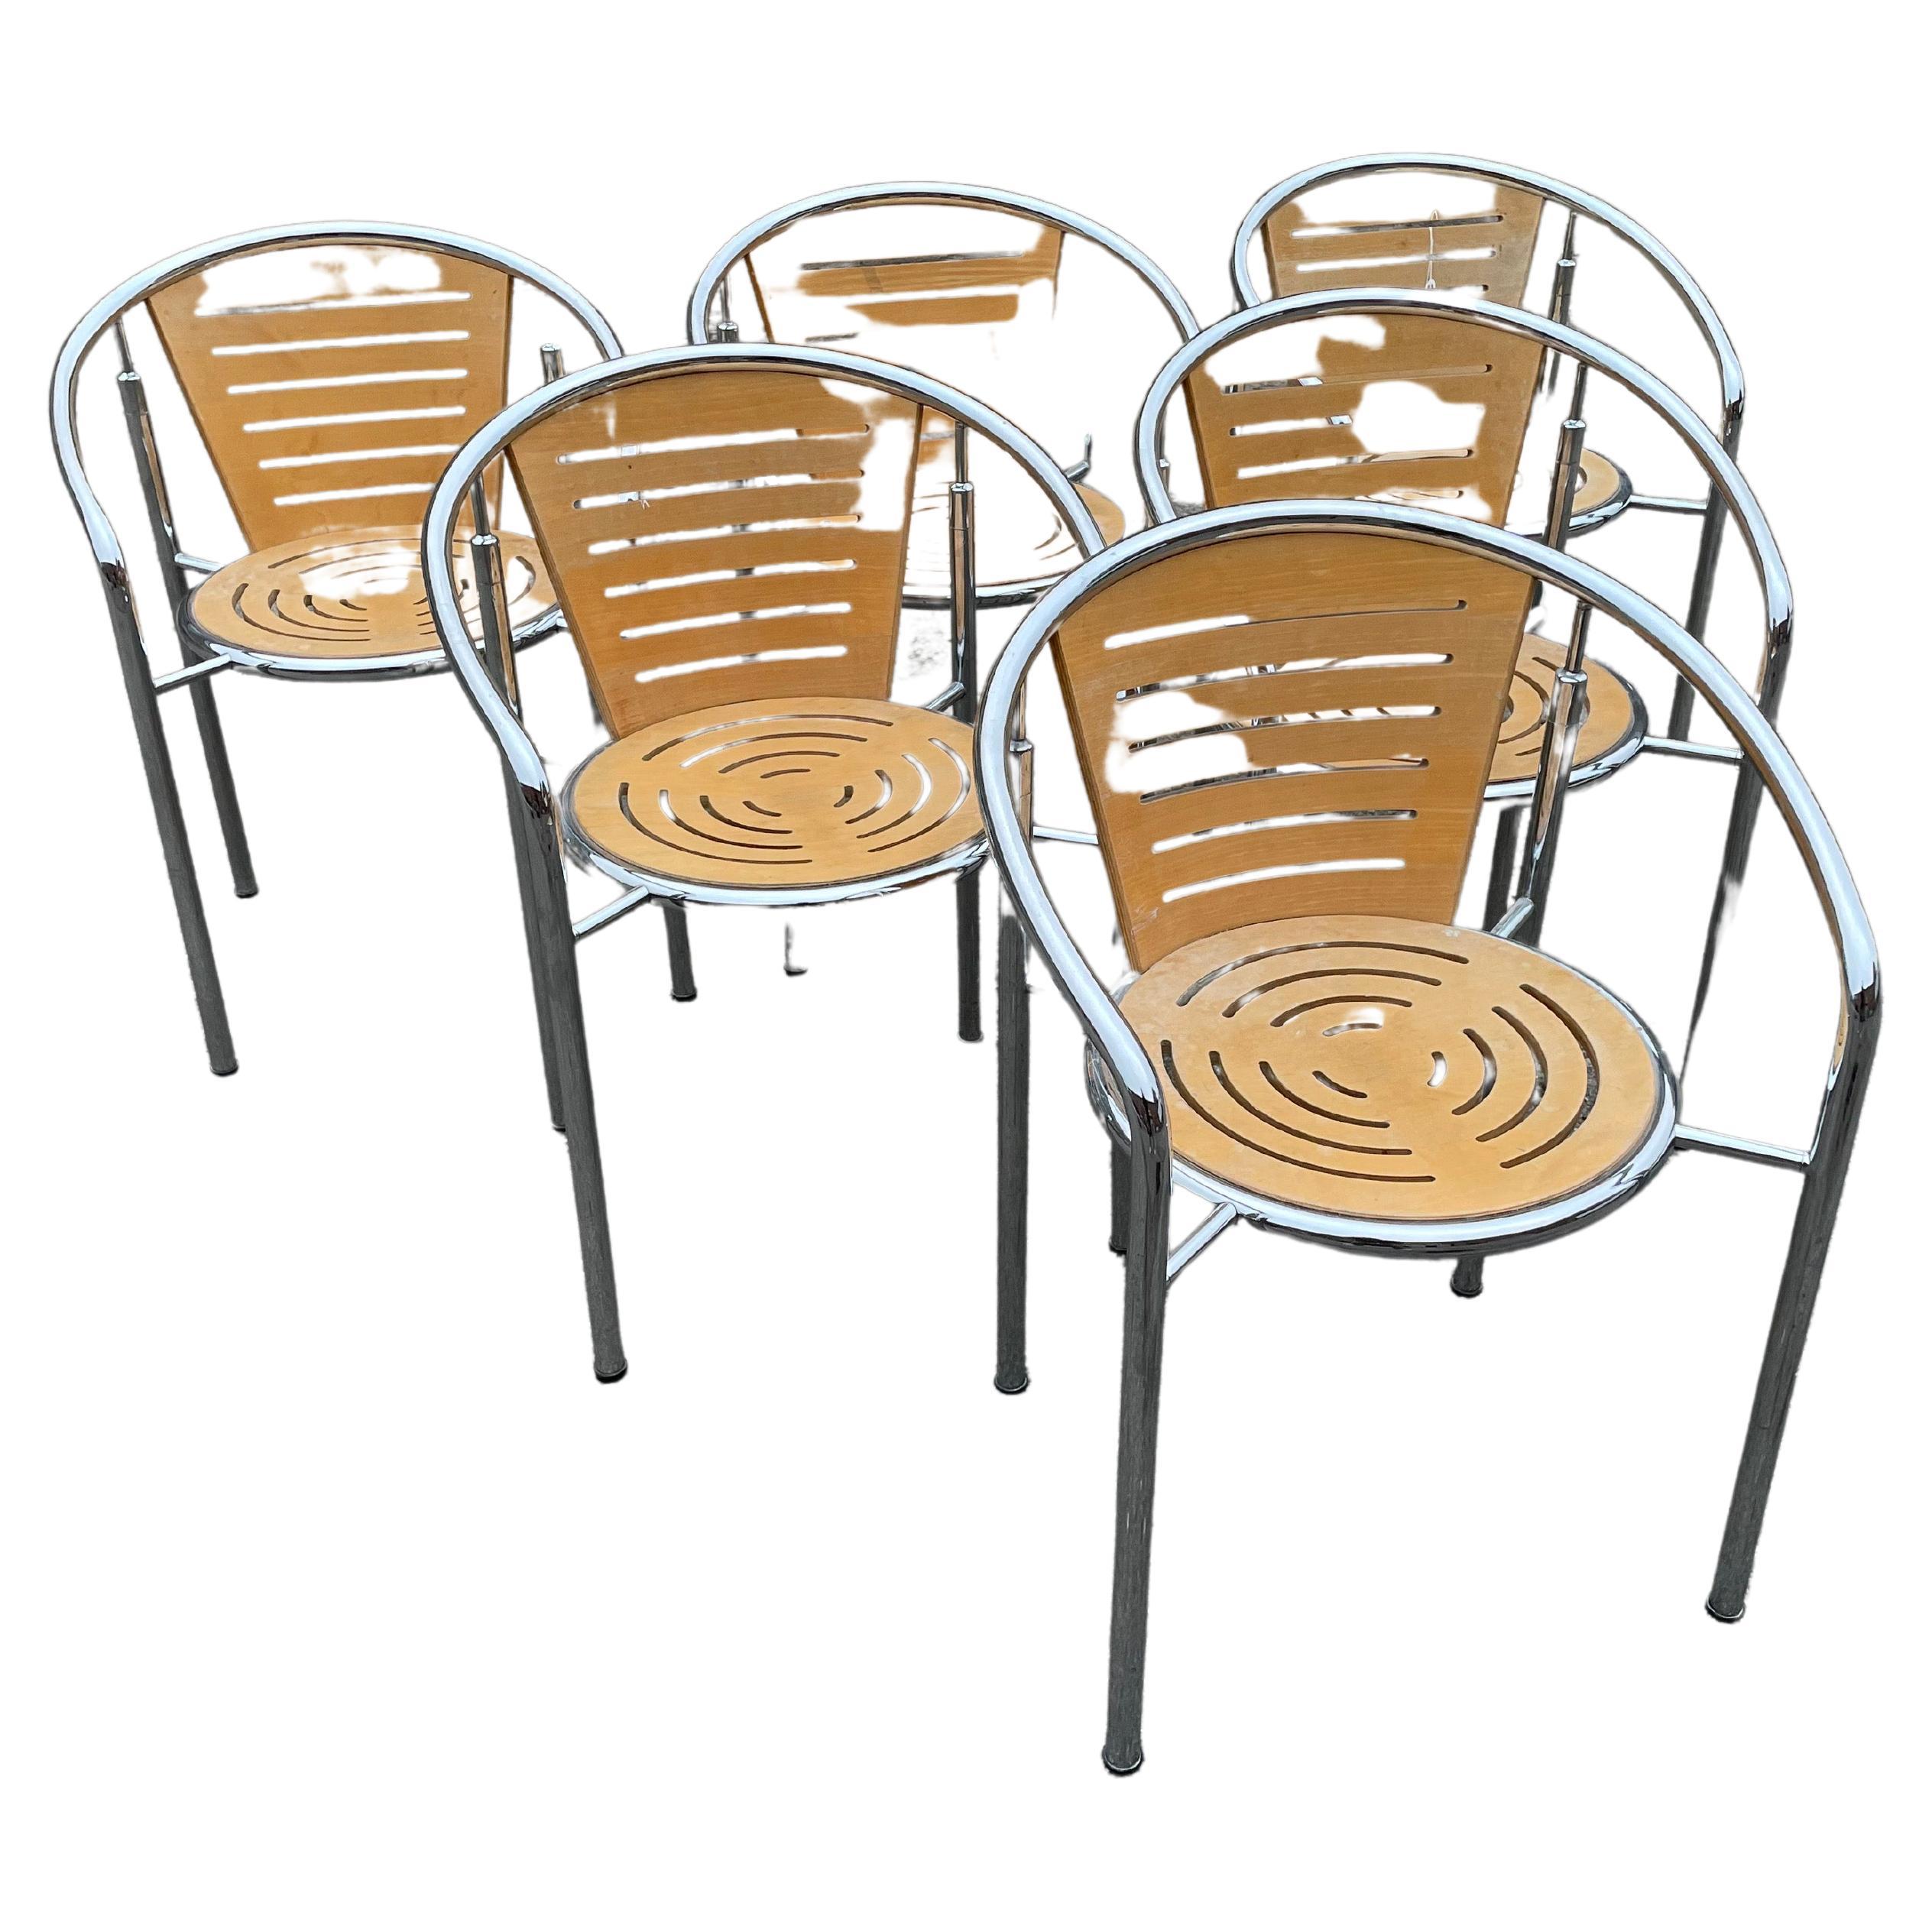 Set of 6 Dining chairs by Rud Thygesen and Johnny Sørensen for Botium Denmark